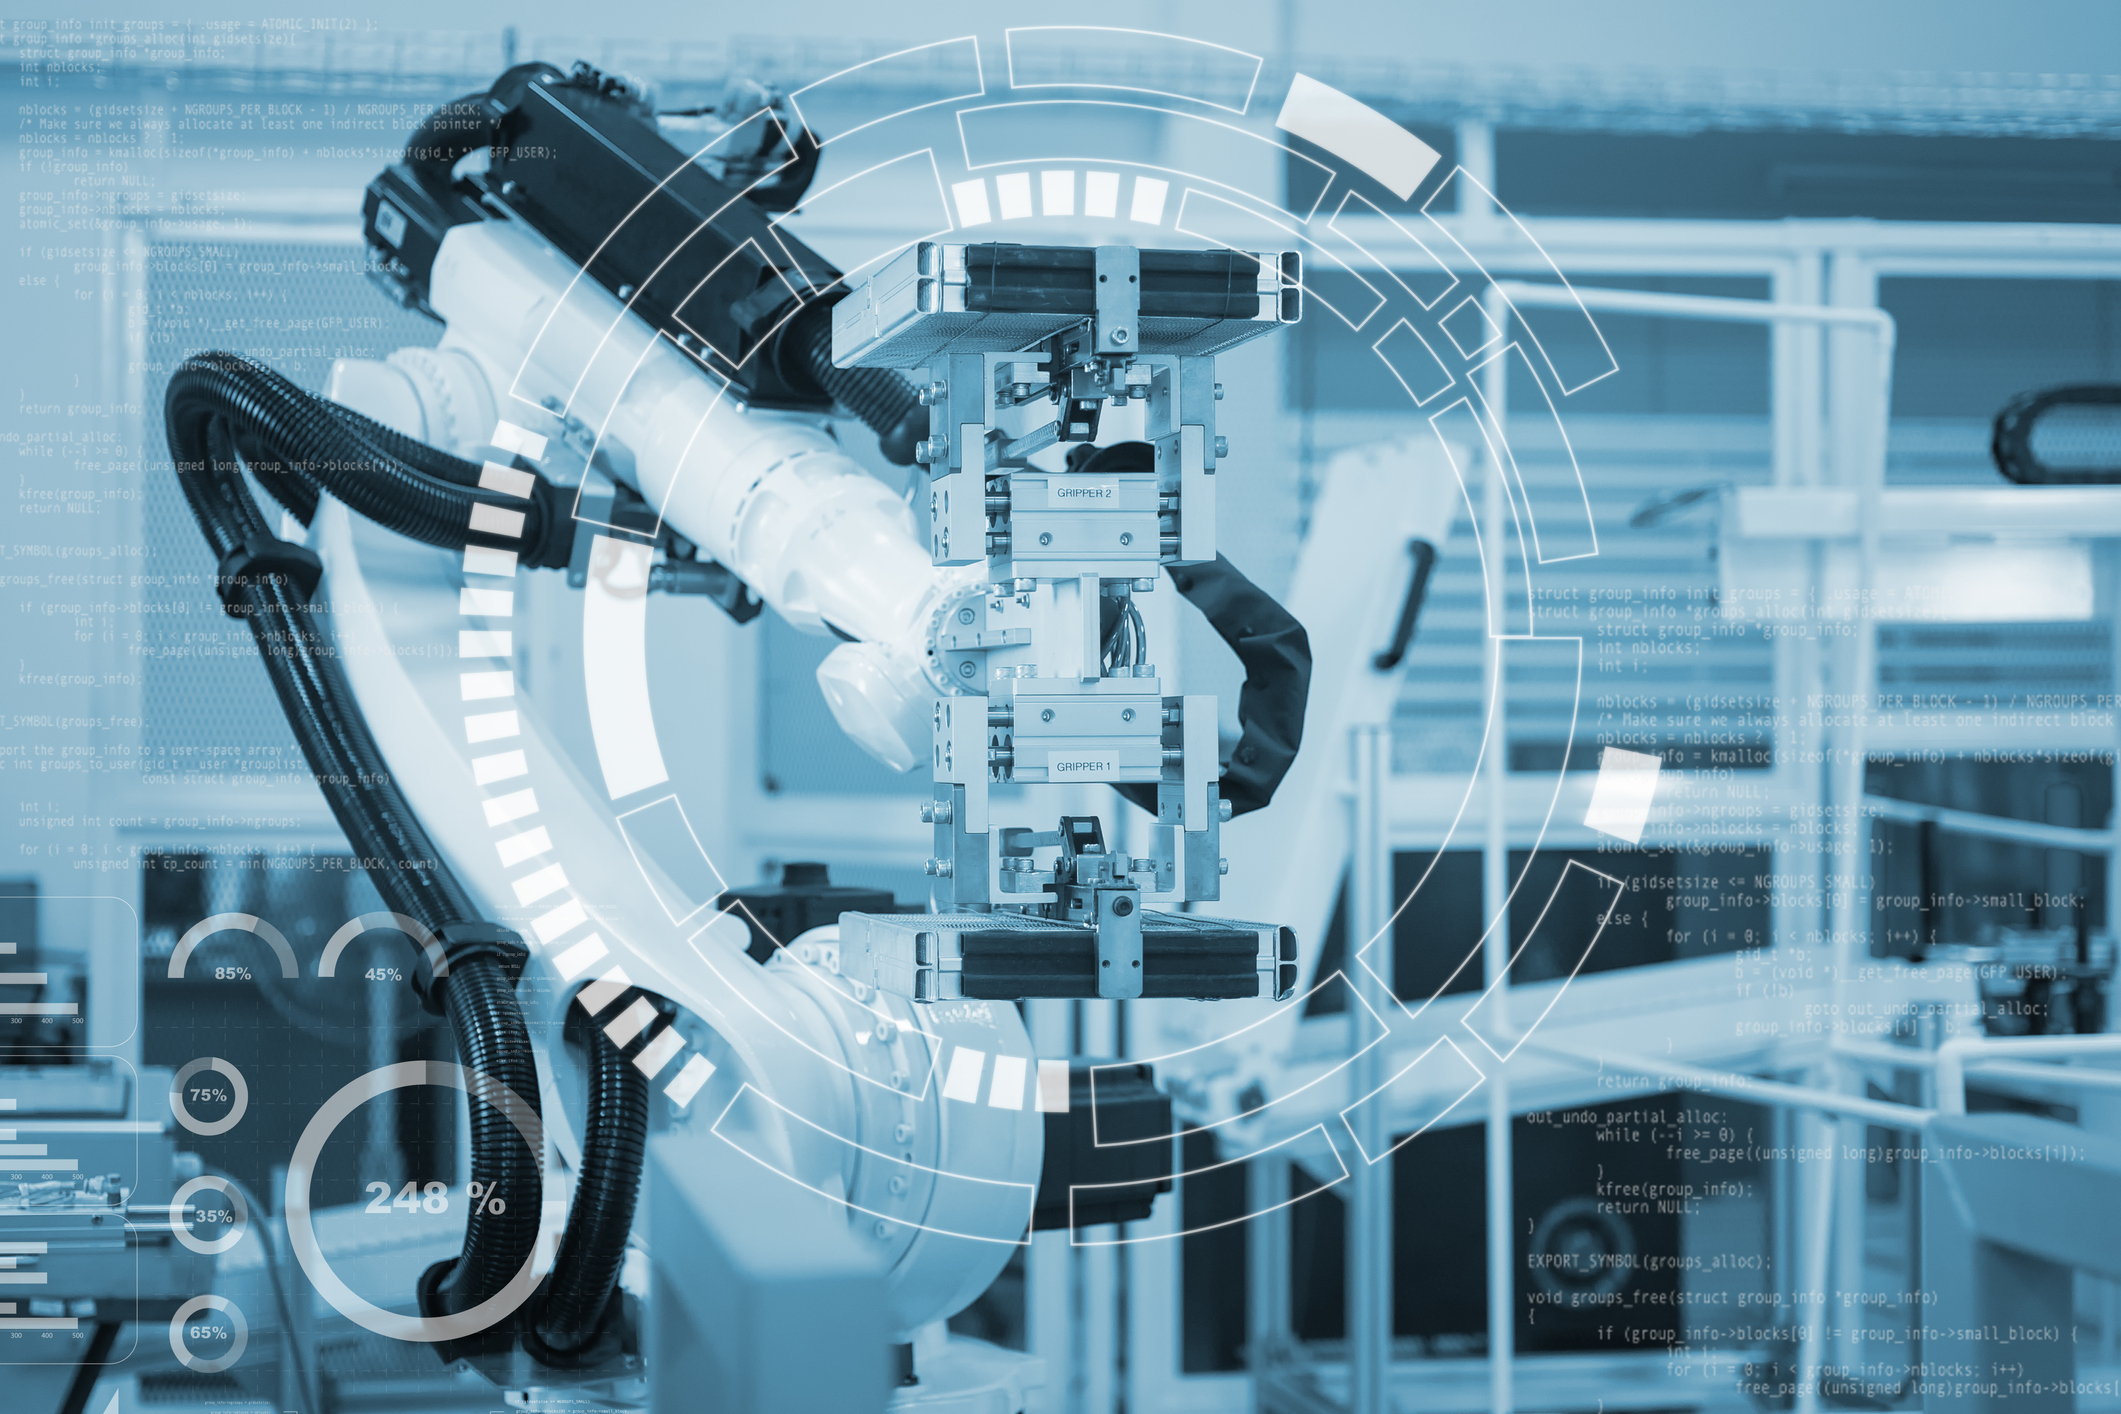 オムロングループの技術論文誌「OMRON TECHNICS」最新号公開─“近未来デザイン”をベースにロボット・AI技術を特集